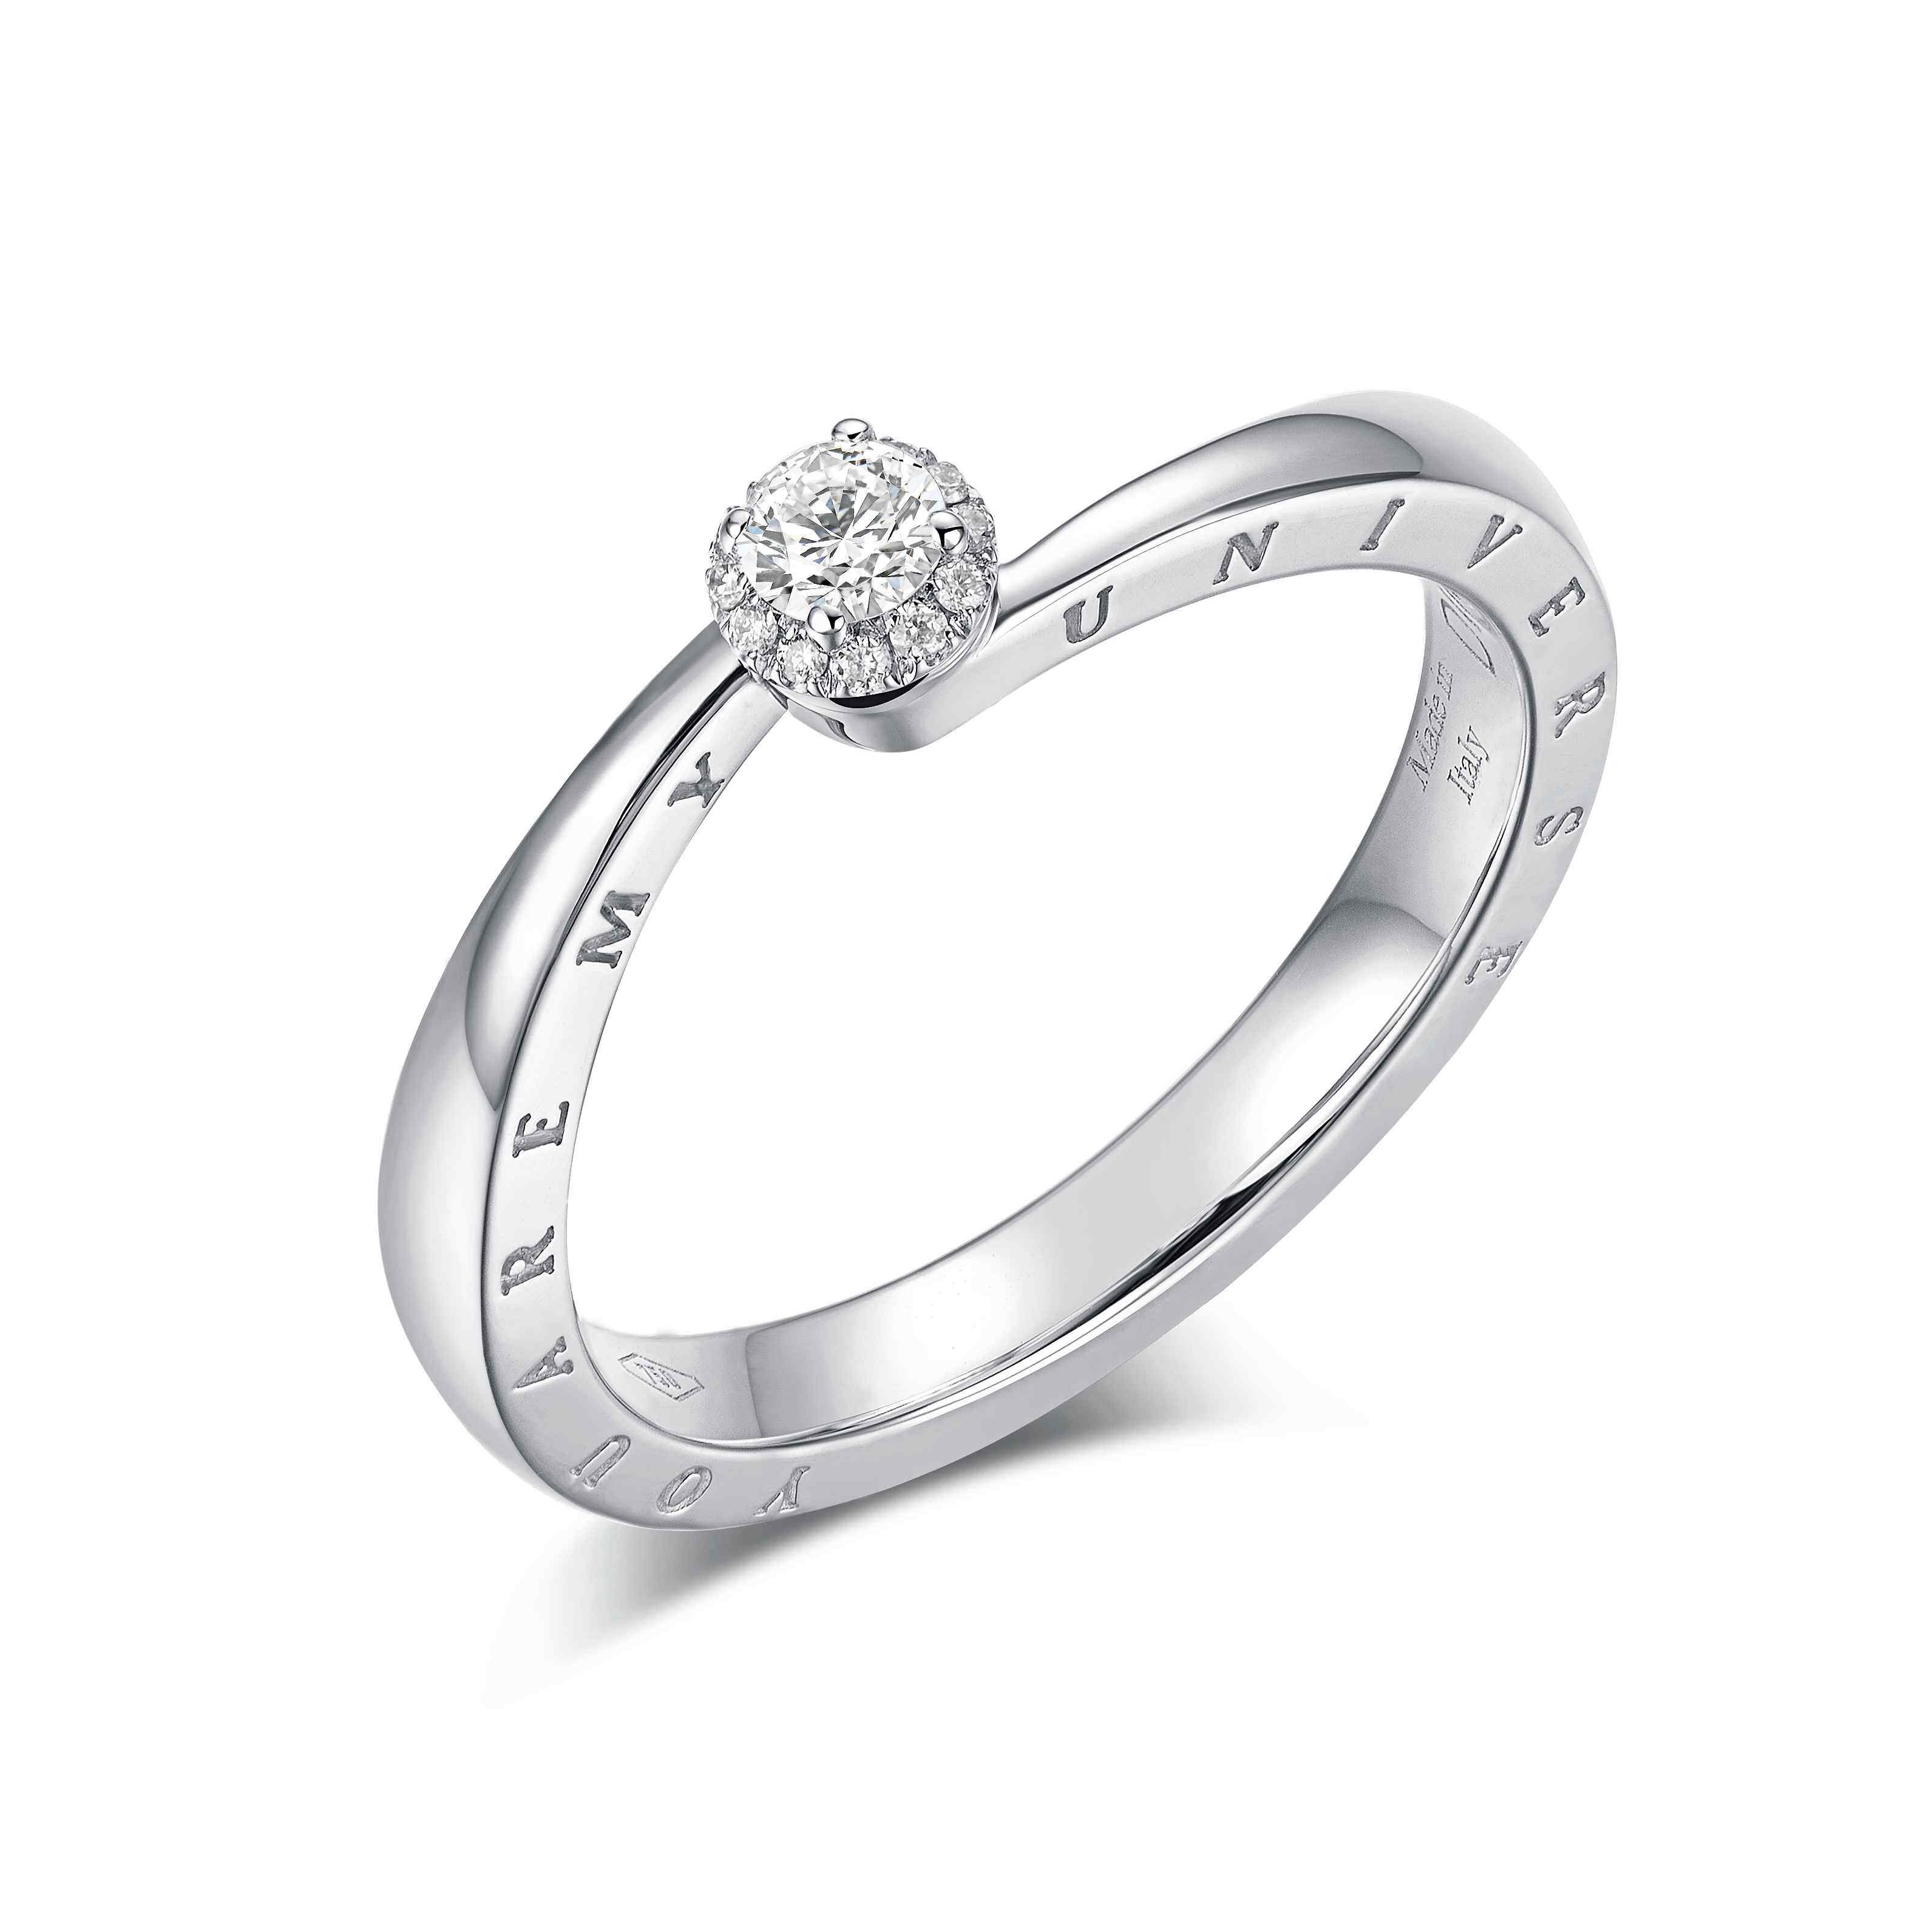 Meteroa系列的設計以流星為主題，戒指選用透徹明亮的鑽石為主石，設計如流